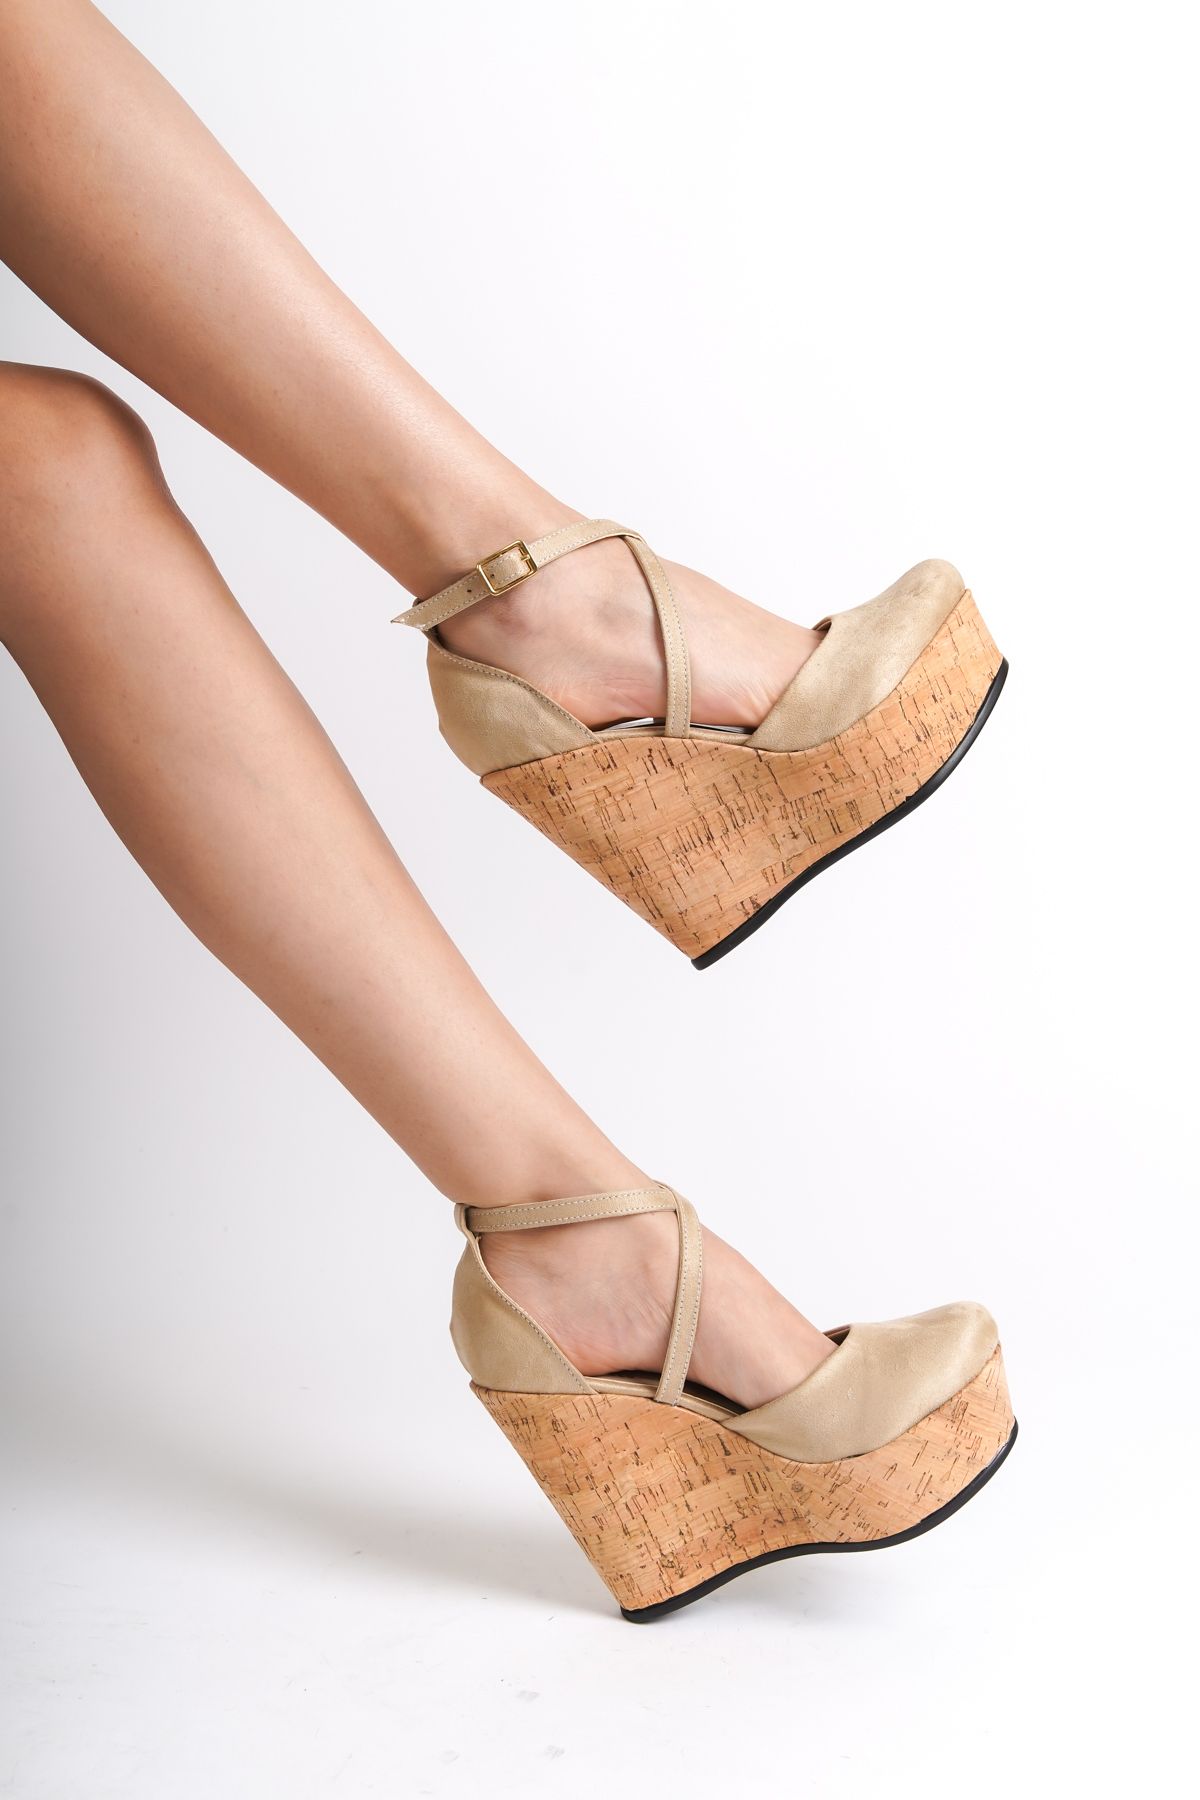 HVZ Exclusive Kadın Dolgu Topuk Ayakkabı Mantar Taban Yüksek Rahat Ayakkabı